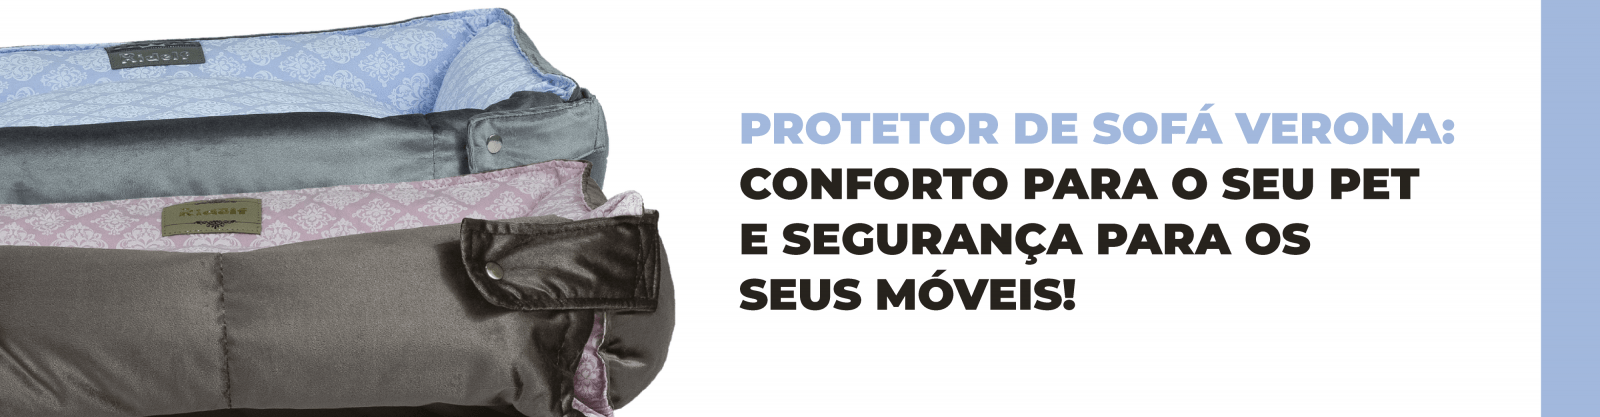 Protetor de Sofá Verona: conforto para o seu pet e segurança para os seus móveis!